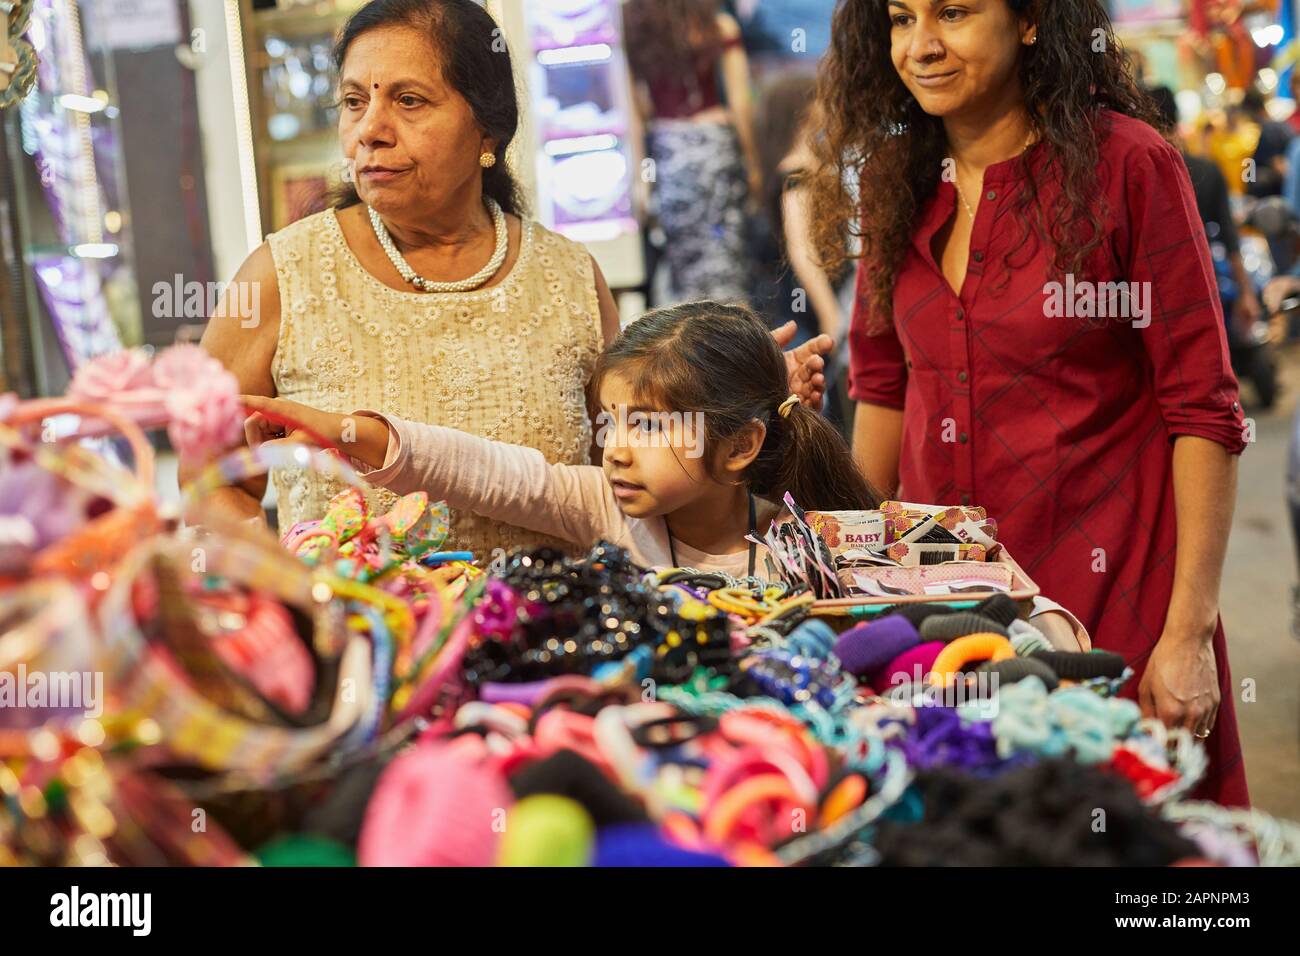 Family of three shopping at bazaar Stock Photo